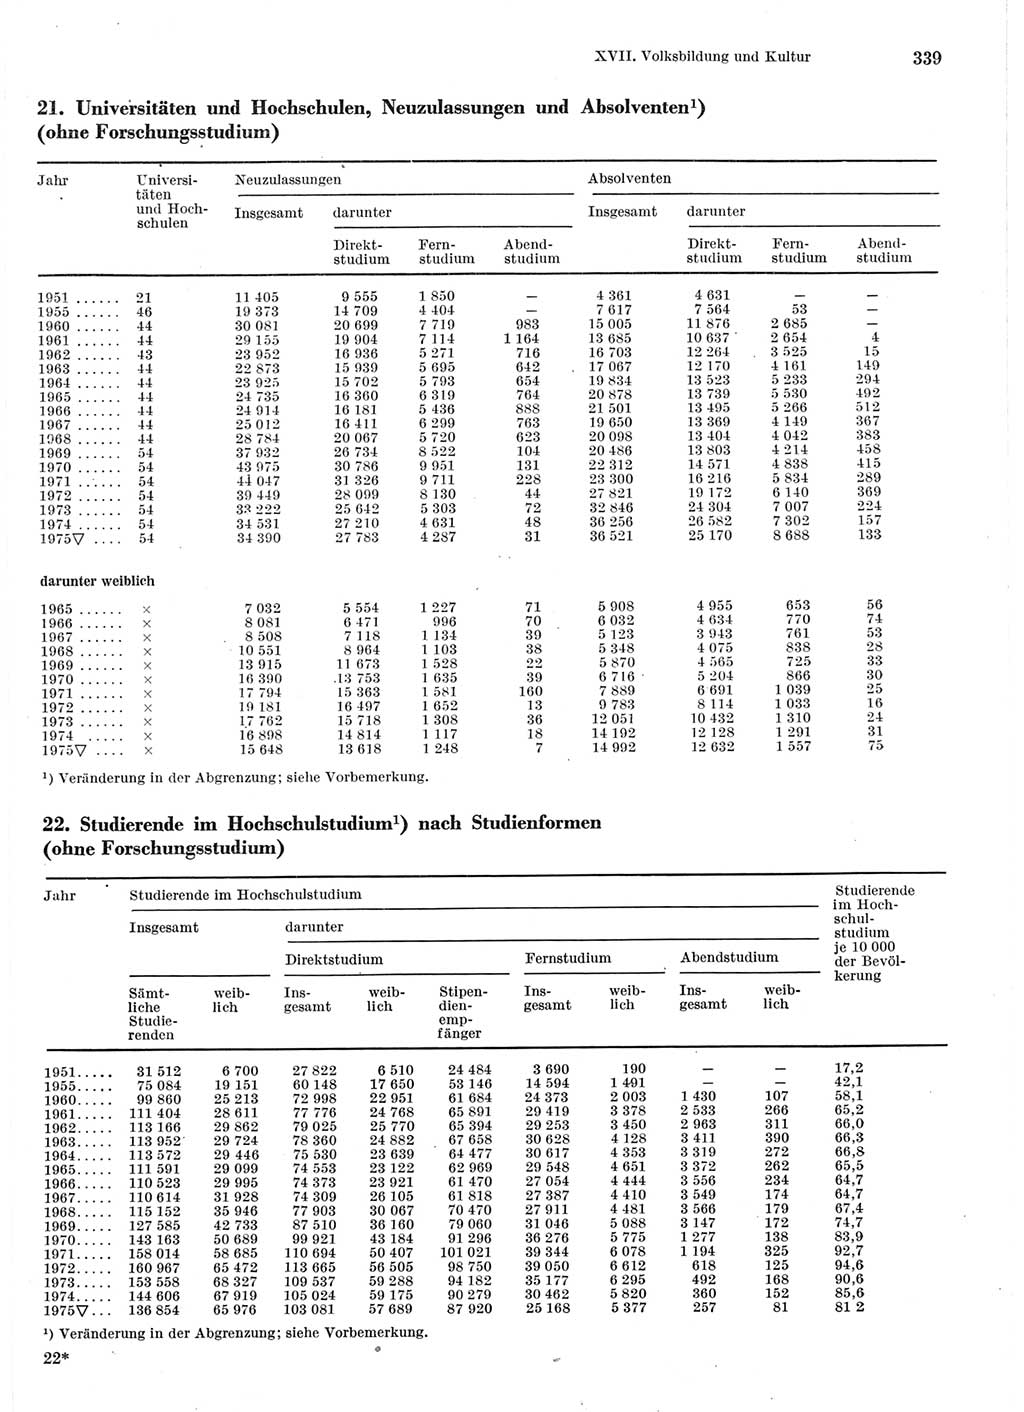 Statistisches Jahrbuch der Deutschen Demokratischen Republik (DDR) 1976, Seite 339 (Stat. Jb. DDR 1976, S. 339)